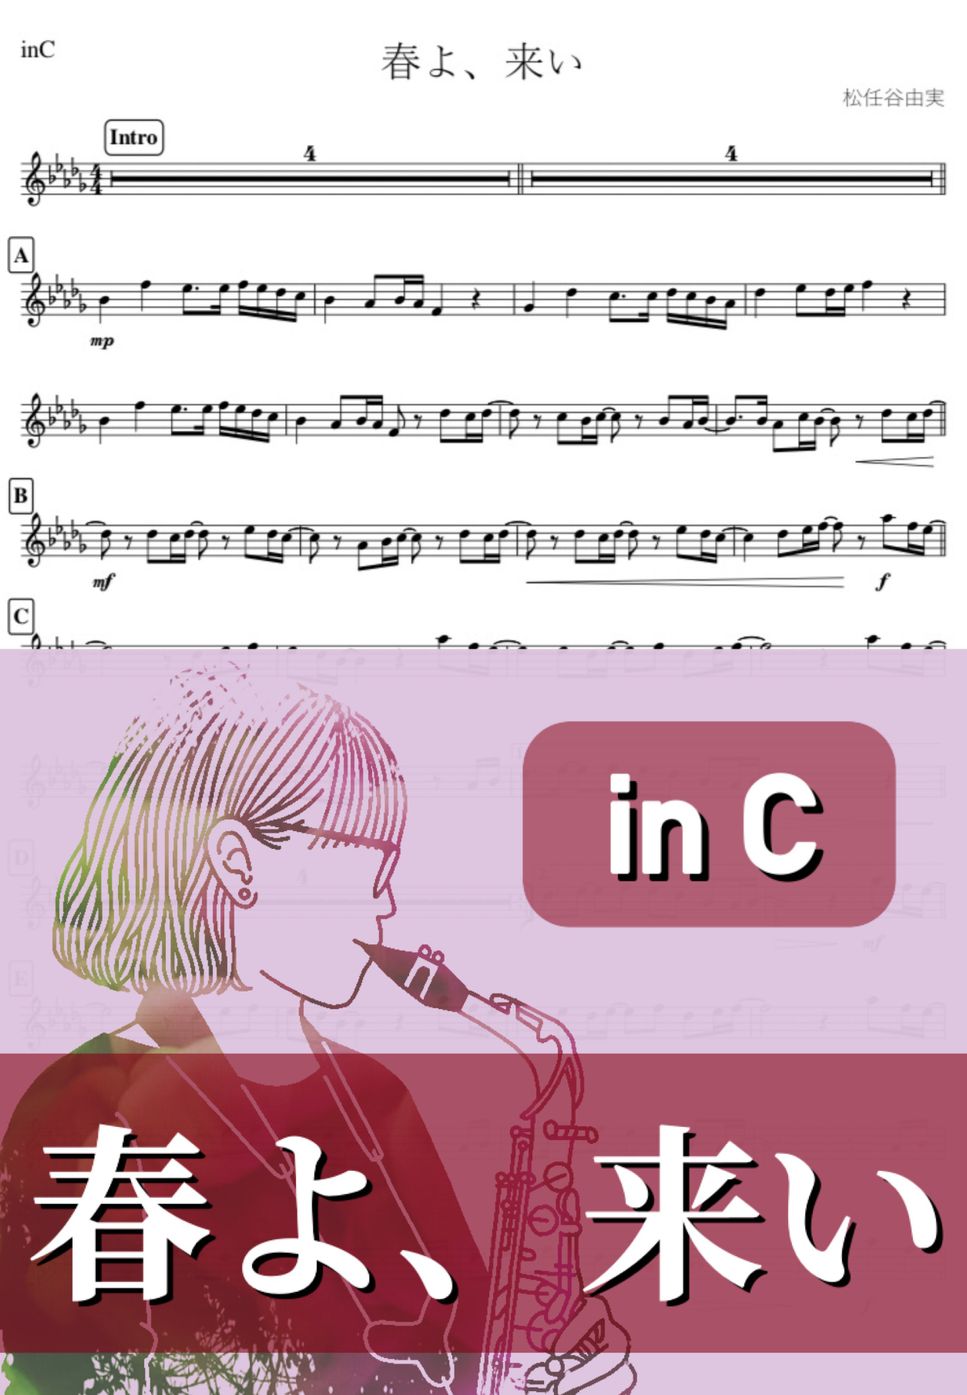 松任谷 由実 - 春よ、来い (C) by kanamusic